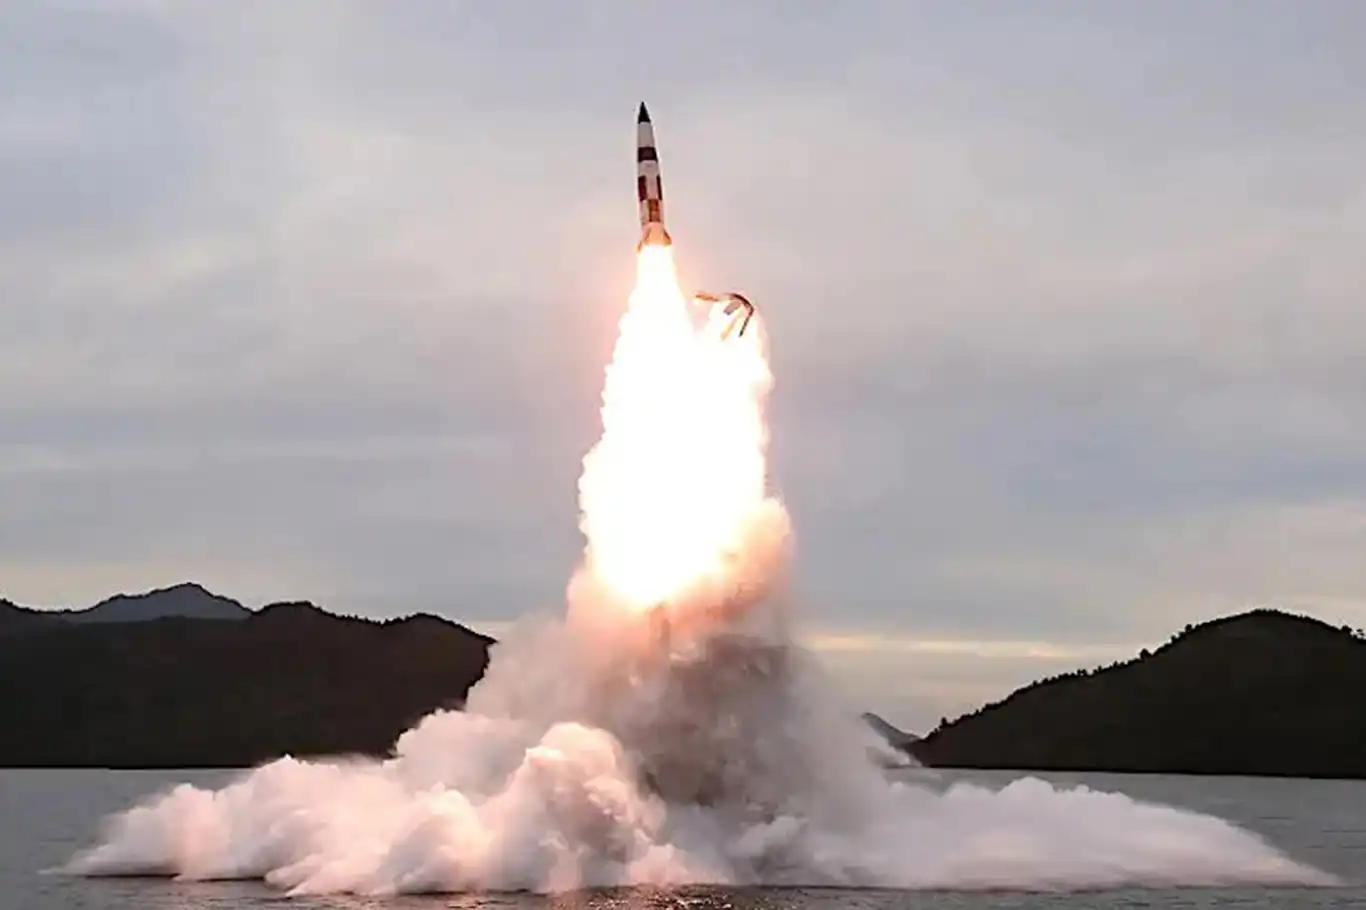 Kuzey Kore, Japon Denizi'ne balistik füze fırlattı